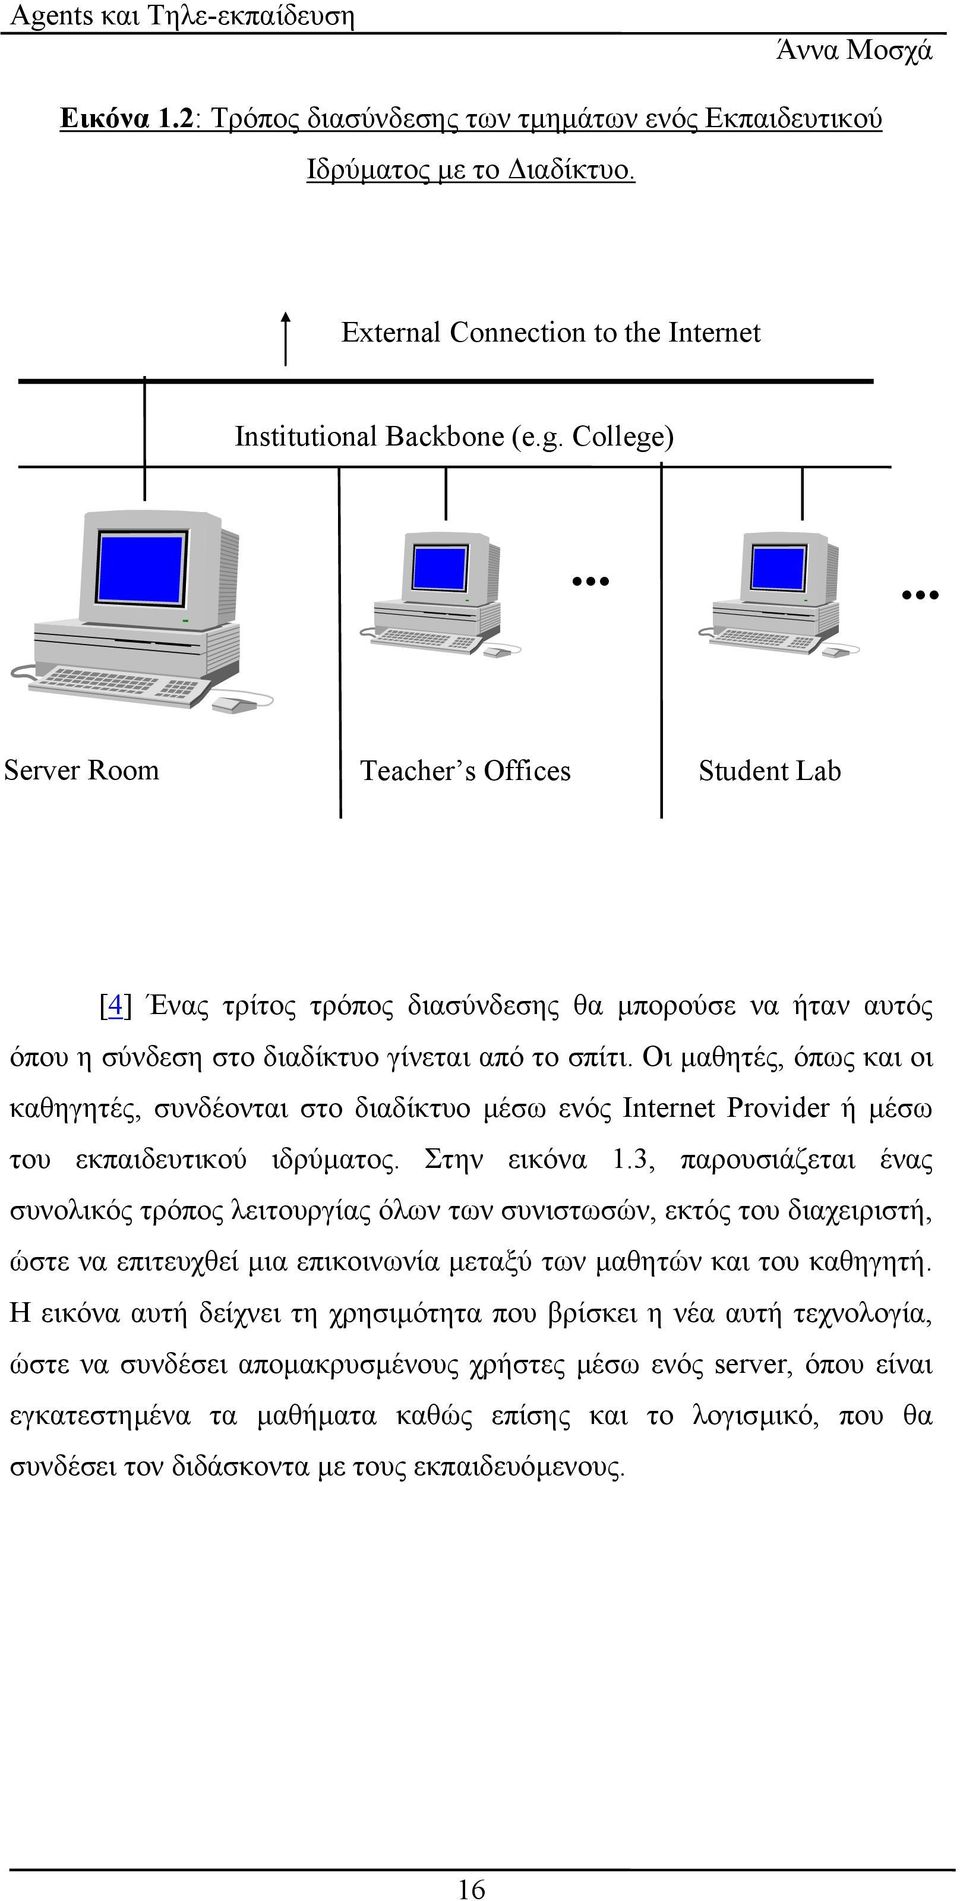 Οι µαθητές, όπως και οι καθηγητές, συνδέονται στο διαδίκτυο µέσω ενός Internet Provider ή µέσω του εκπαιδευτικού ιδρύµατος. Στην εικόνα 1.